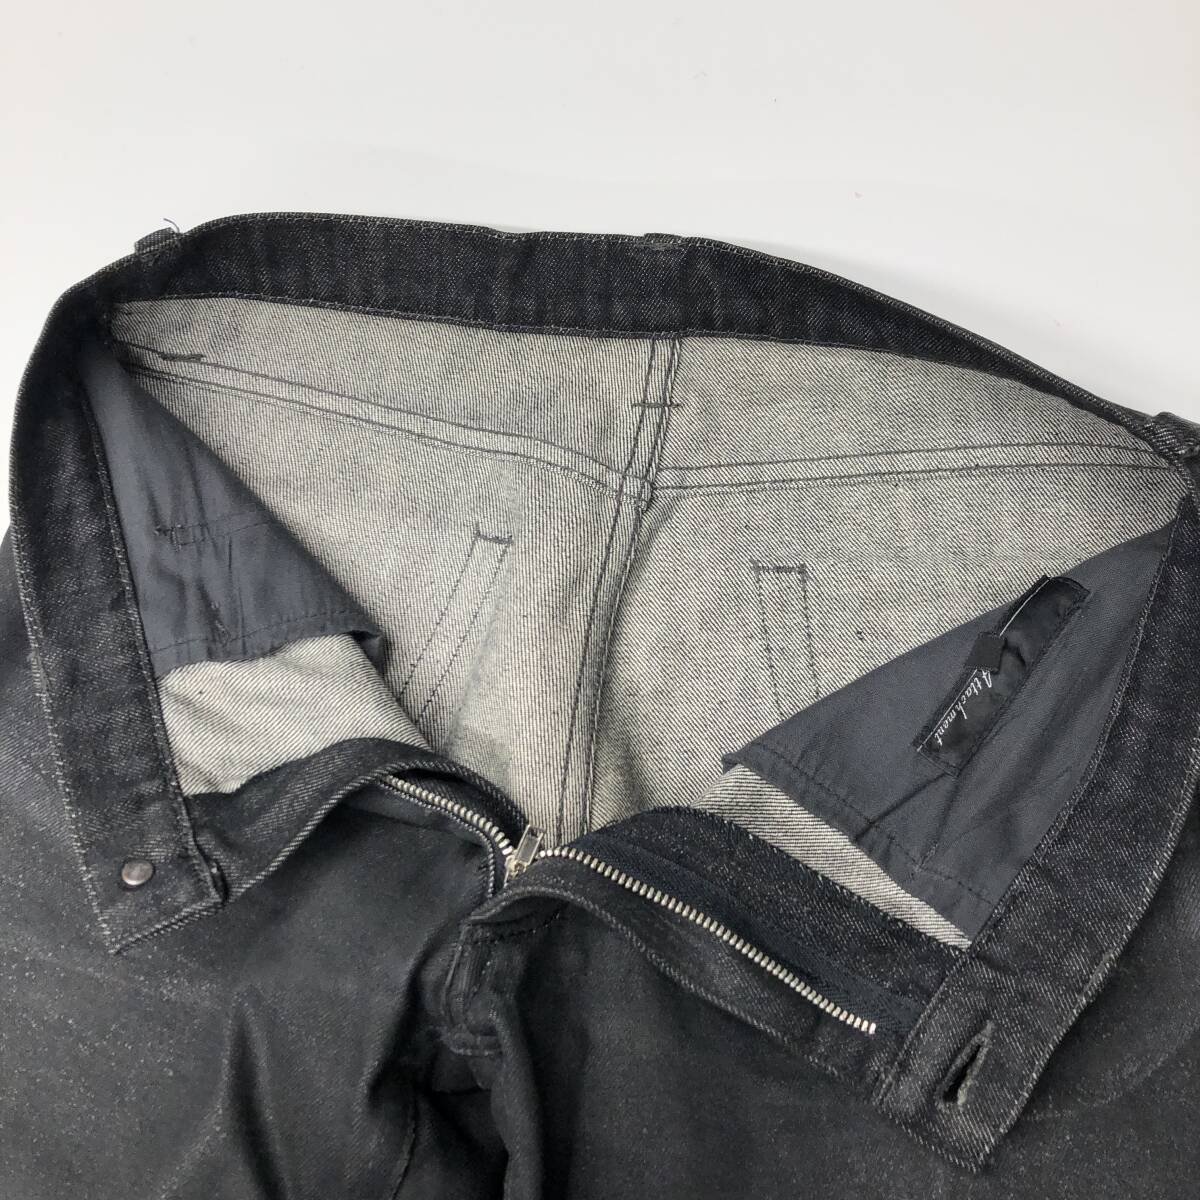  сделано в Японии Attachment Attachment Denim брюки черный отражатель покрытие 2 размер 